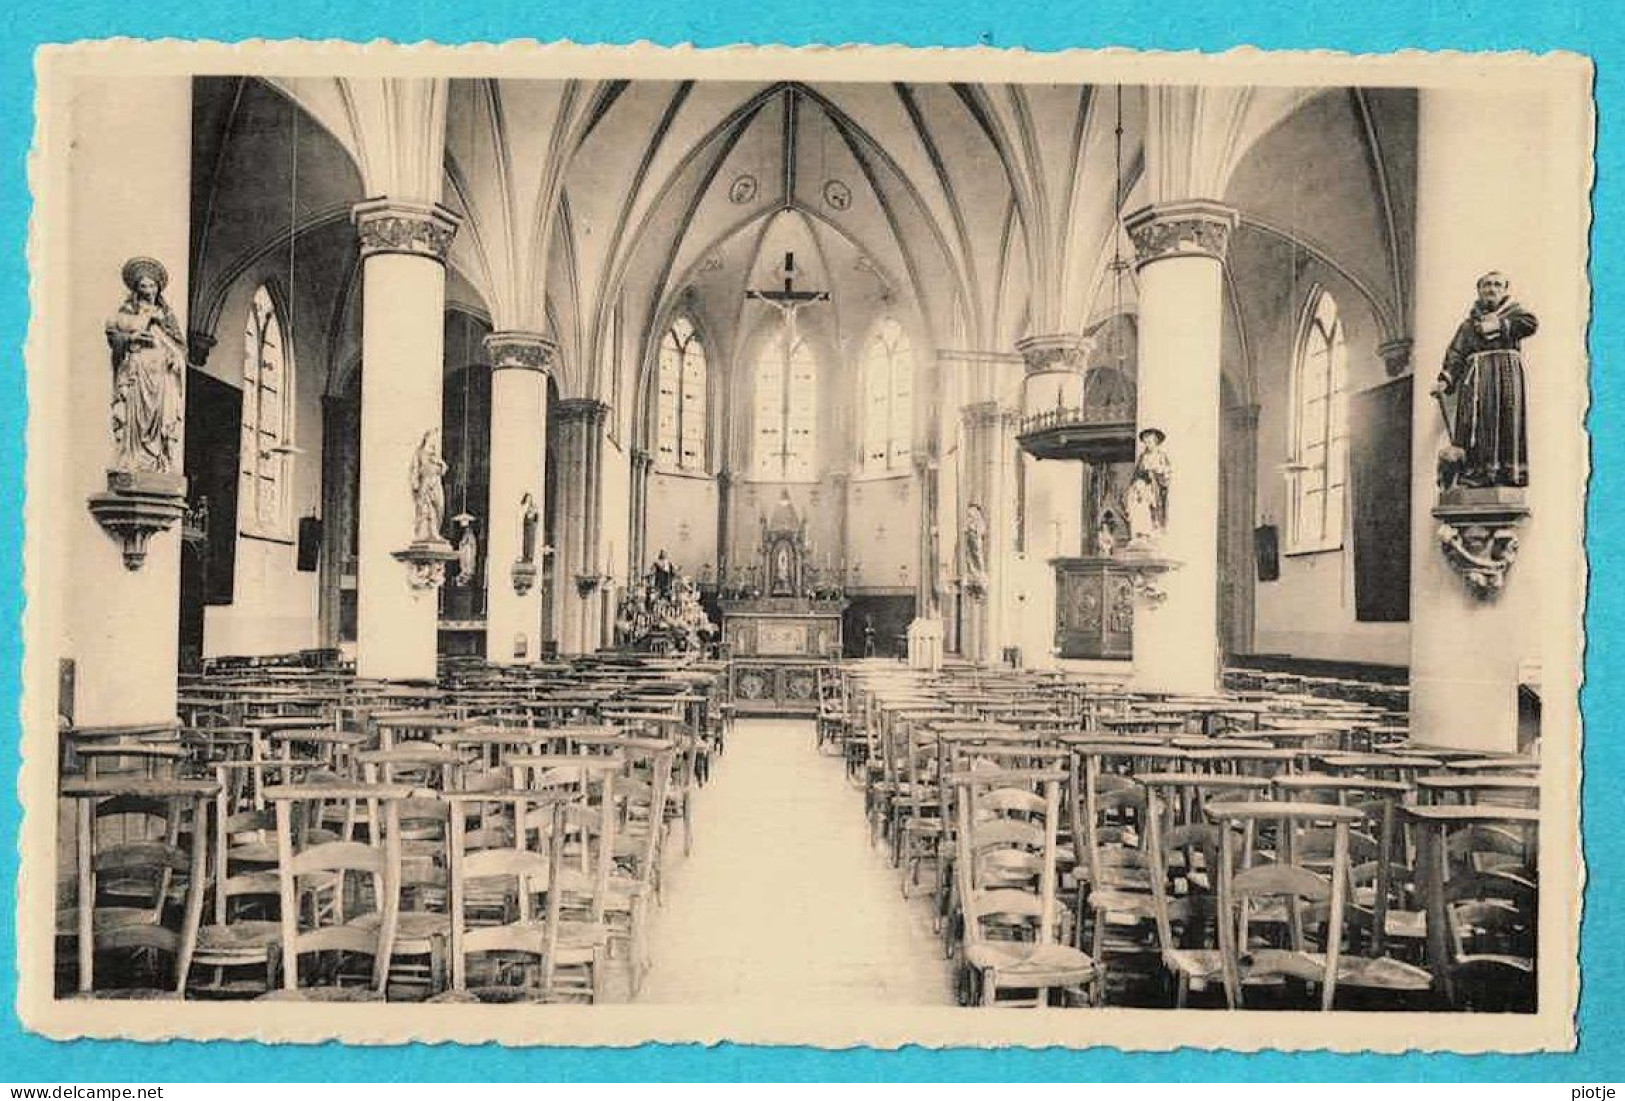 * Maria Aalter (Oost Vlaanderen) * (Nels, Uitg Huis De Faux - Steyaert) Binnenzicht Kerk, Intérieur église, Church, Old - Aalter